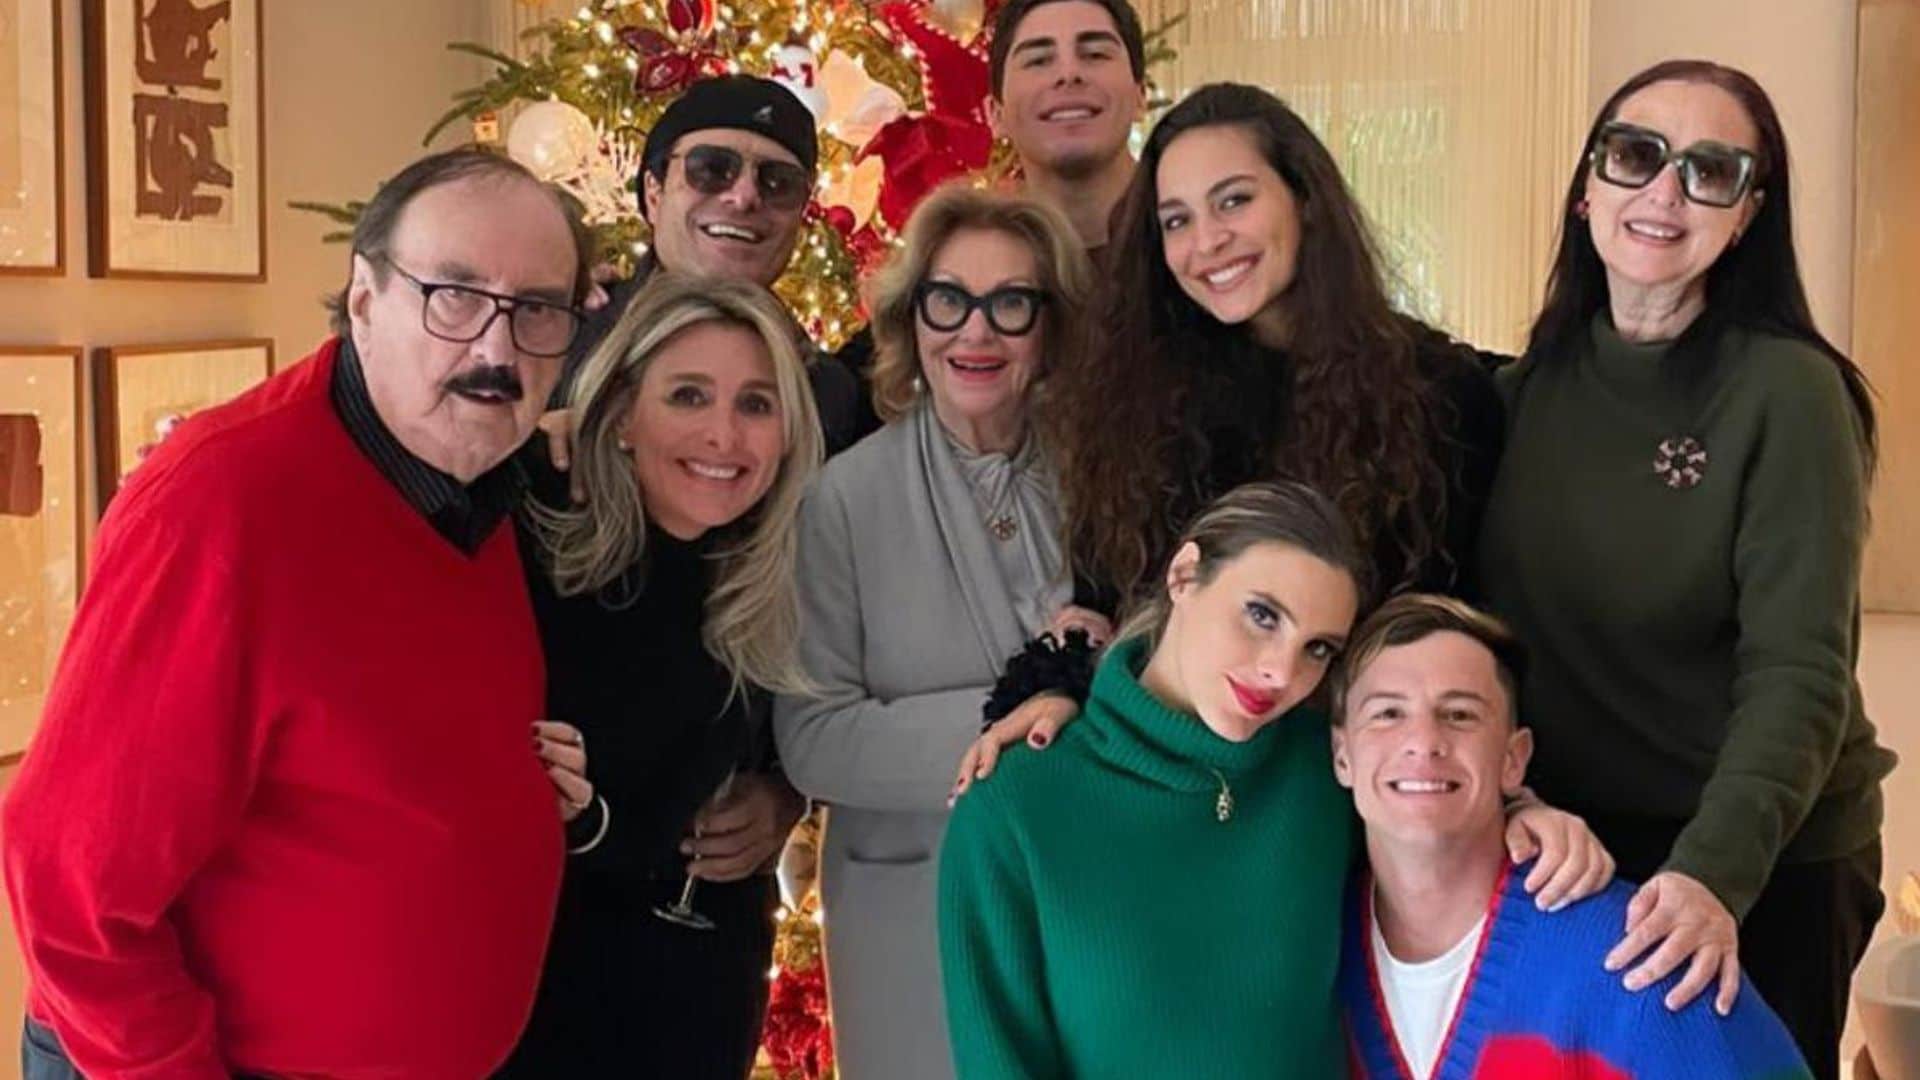 Lele Pons, Guaynaa, Chayanne y su familia en Navidad